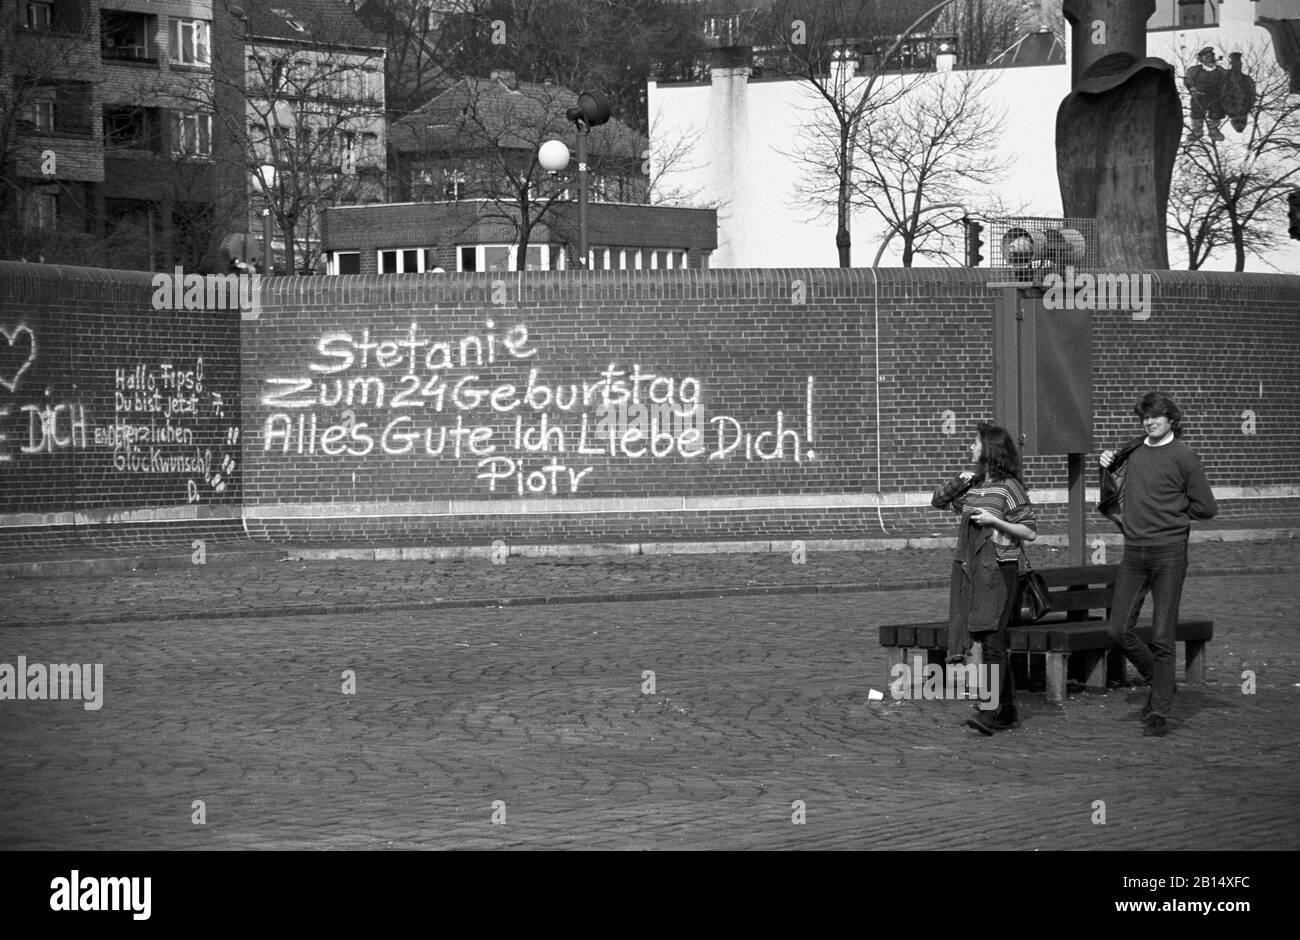 Quayside Walk am St. Pauli Fischmarkt, Hamburg, Deutschland, ca. 1988. Graffiti lautet: "Die Fanie an ihrem 24. Geburtstag ist alles gut, ich liebe dich! Piotr' Schwarz-Weiß-Filmfoto Stockfoto